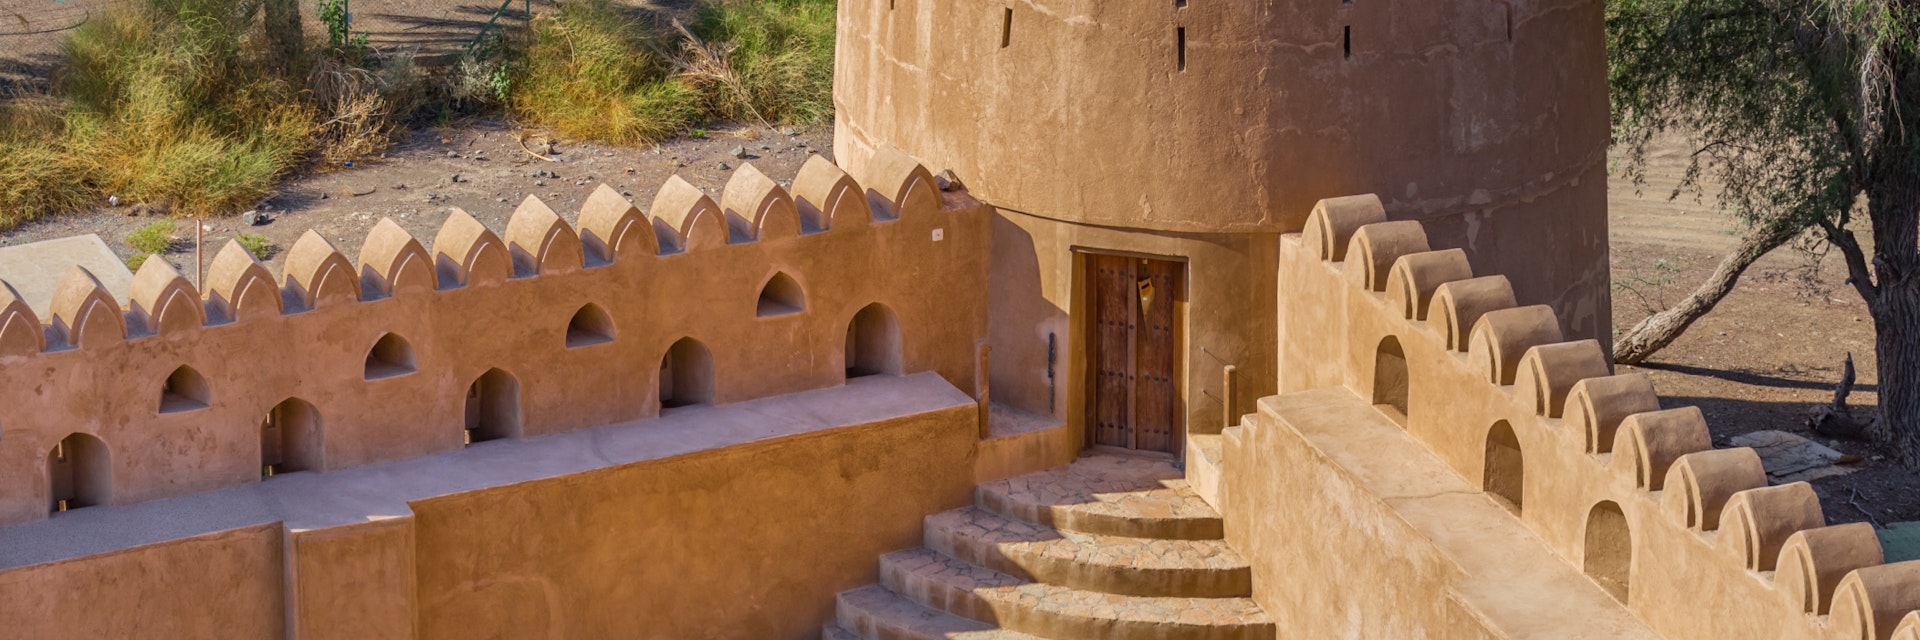 BAHLA, OMAN - NOVEMBER 28, 2017: detail of Jabrin Castle, in Bahla, Oman